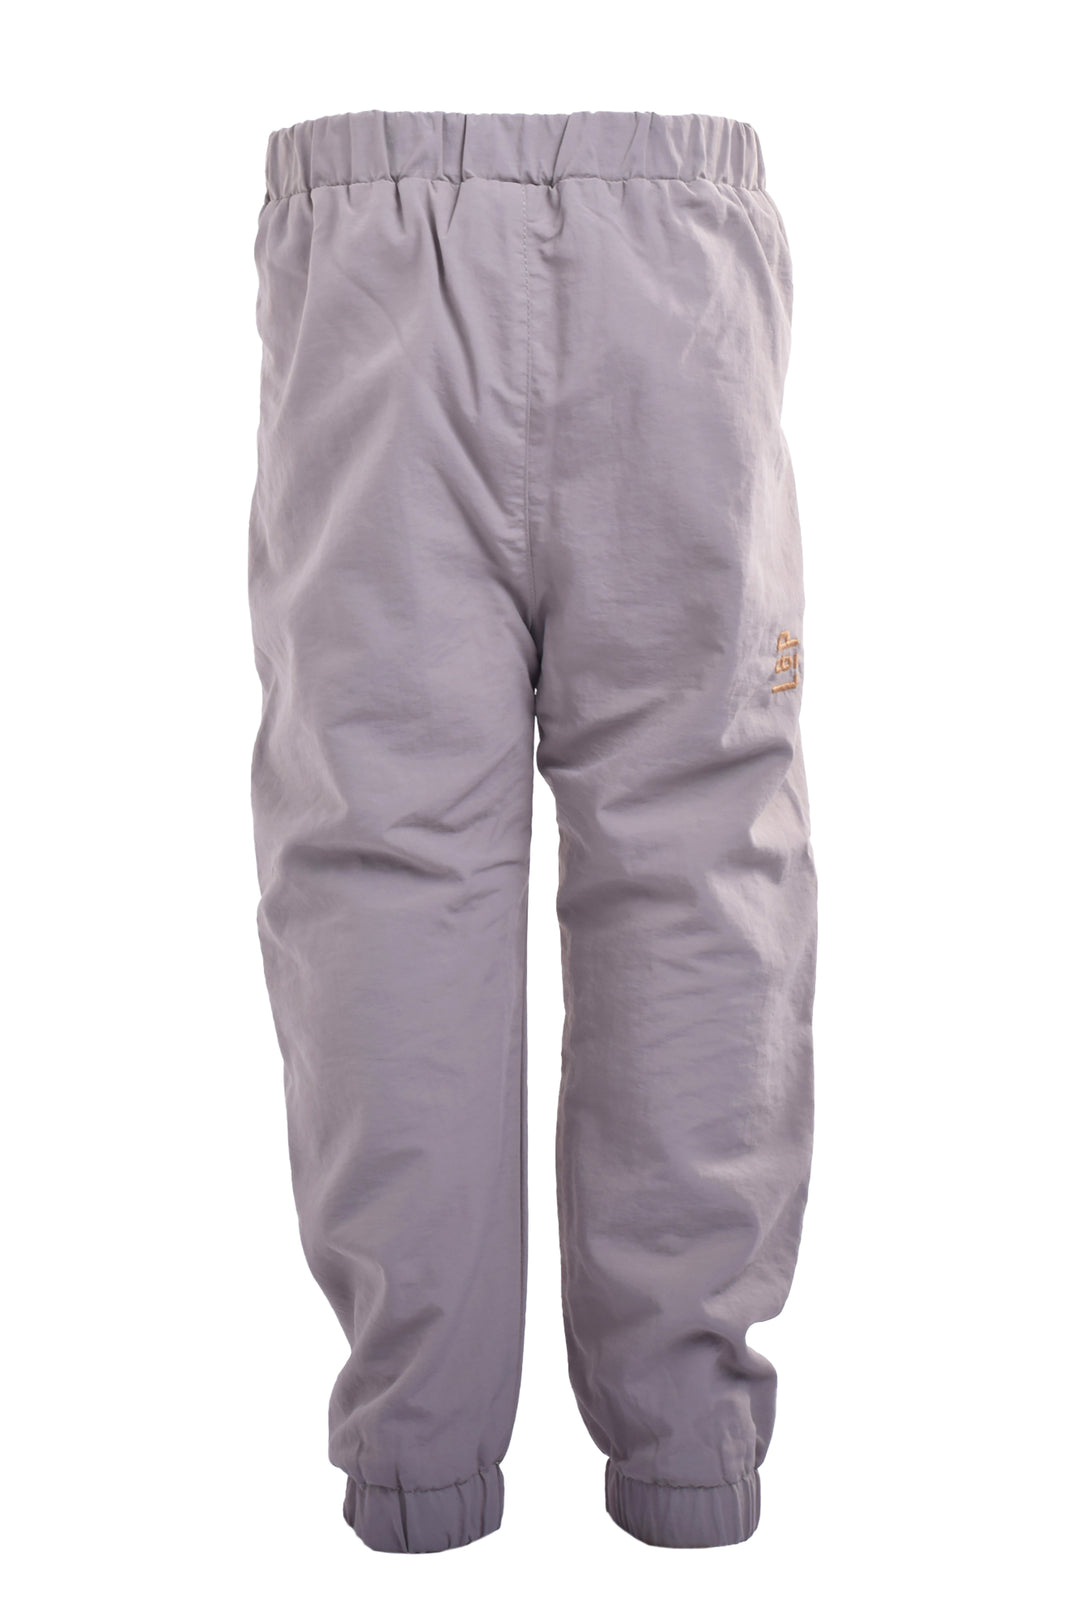 Fleece Lined Outdoor Pants [Baby]